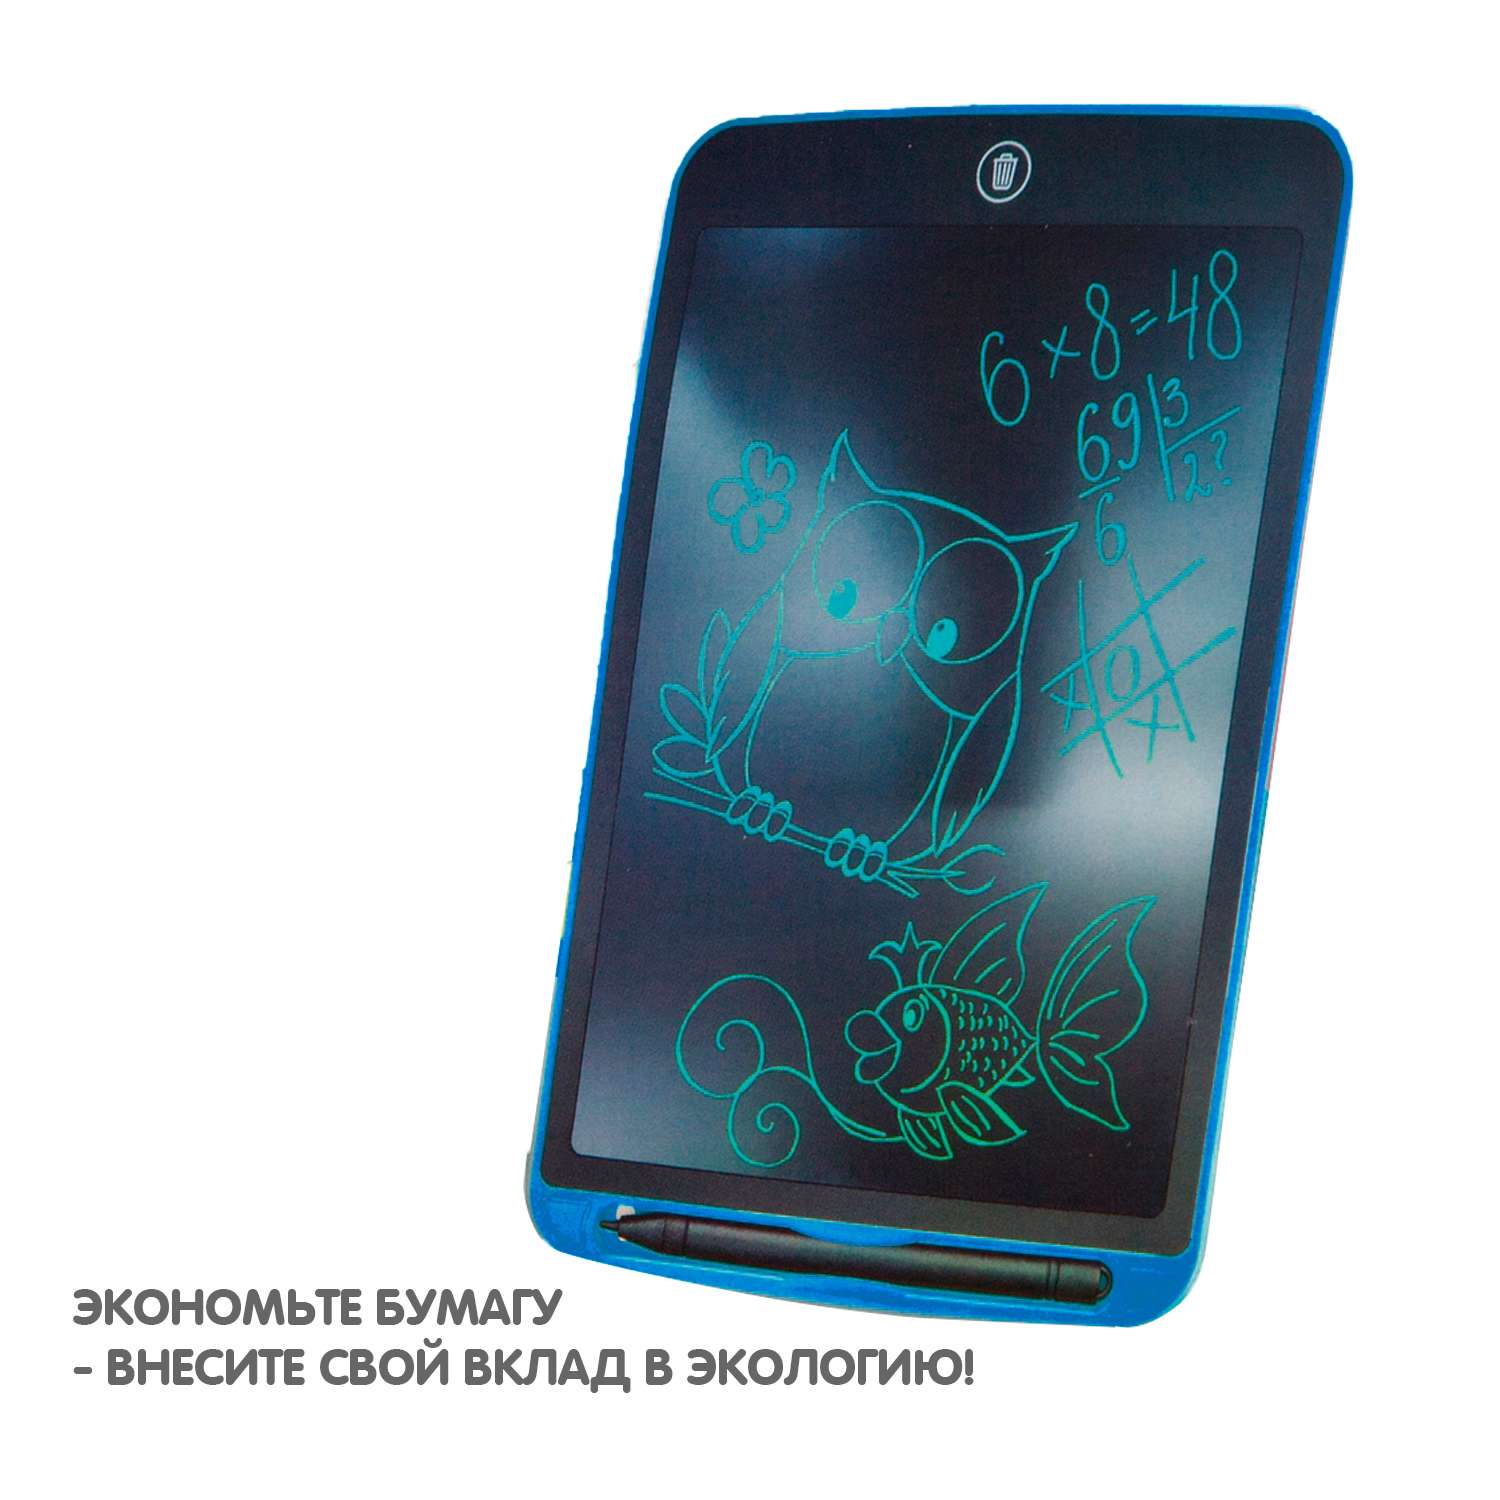 Обучающий планшет BONDIBON монохромный с жидкокристаллическим экраном 8 дюймов синий корпус - фото 12